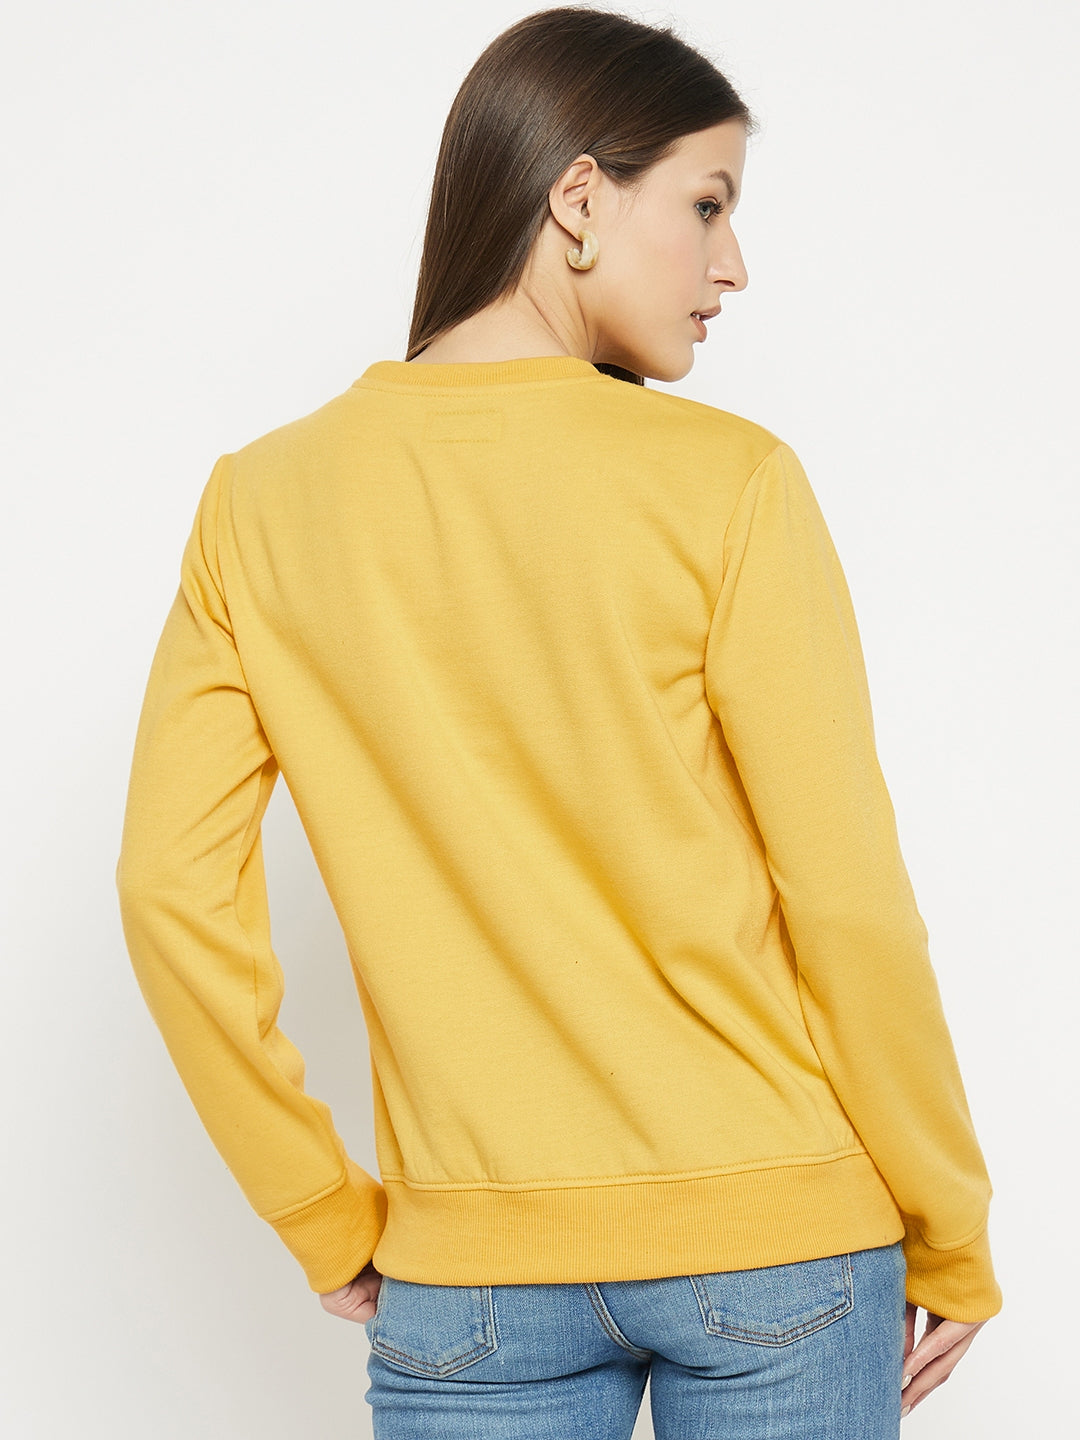 Women's Printed Yellow Sweatshirt